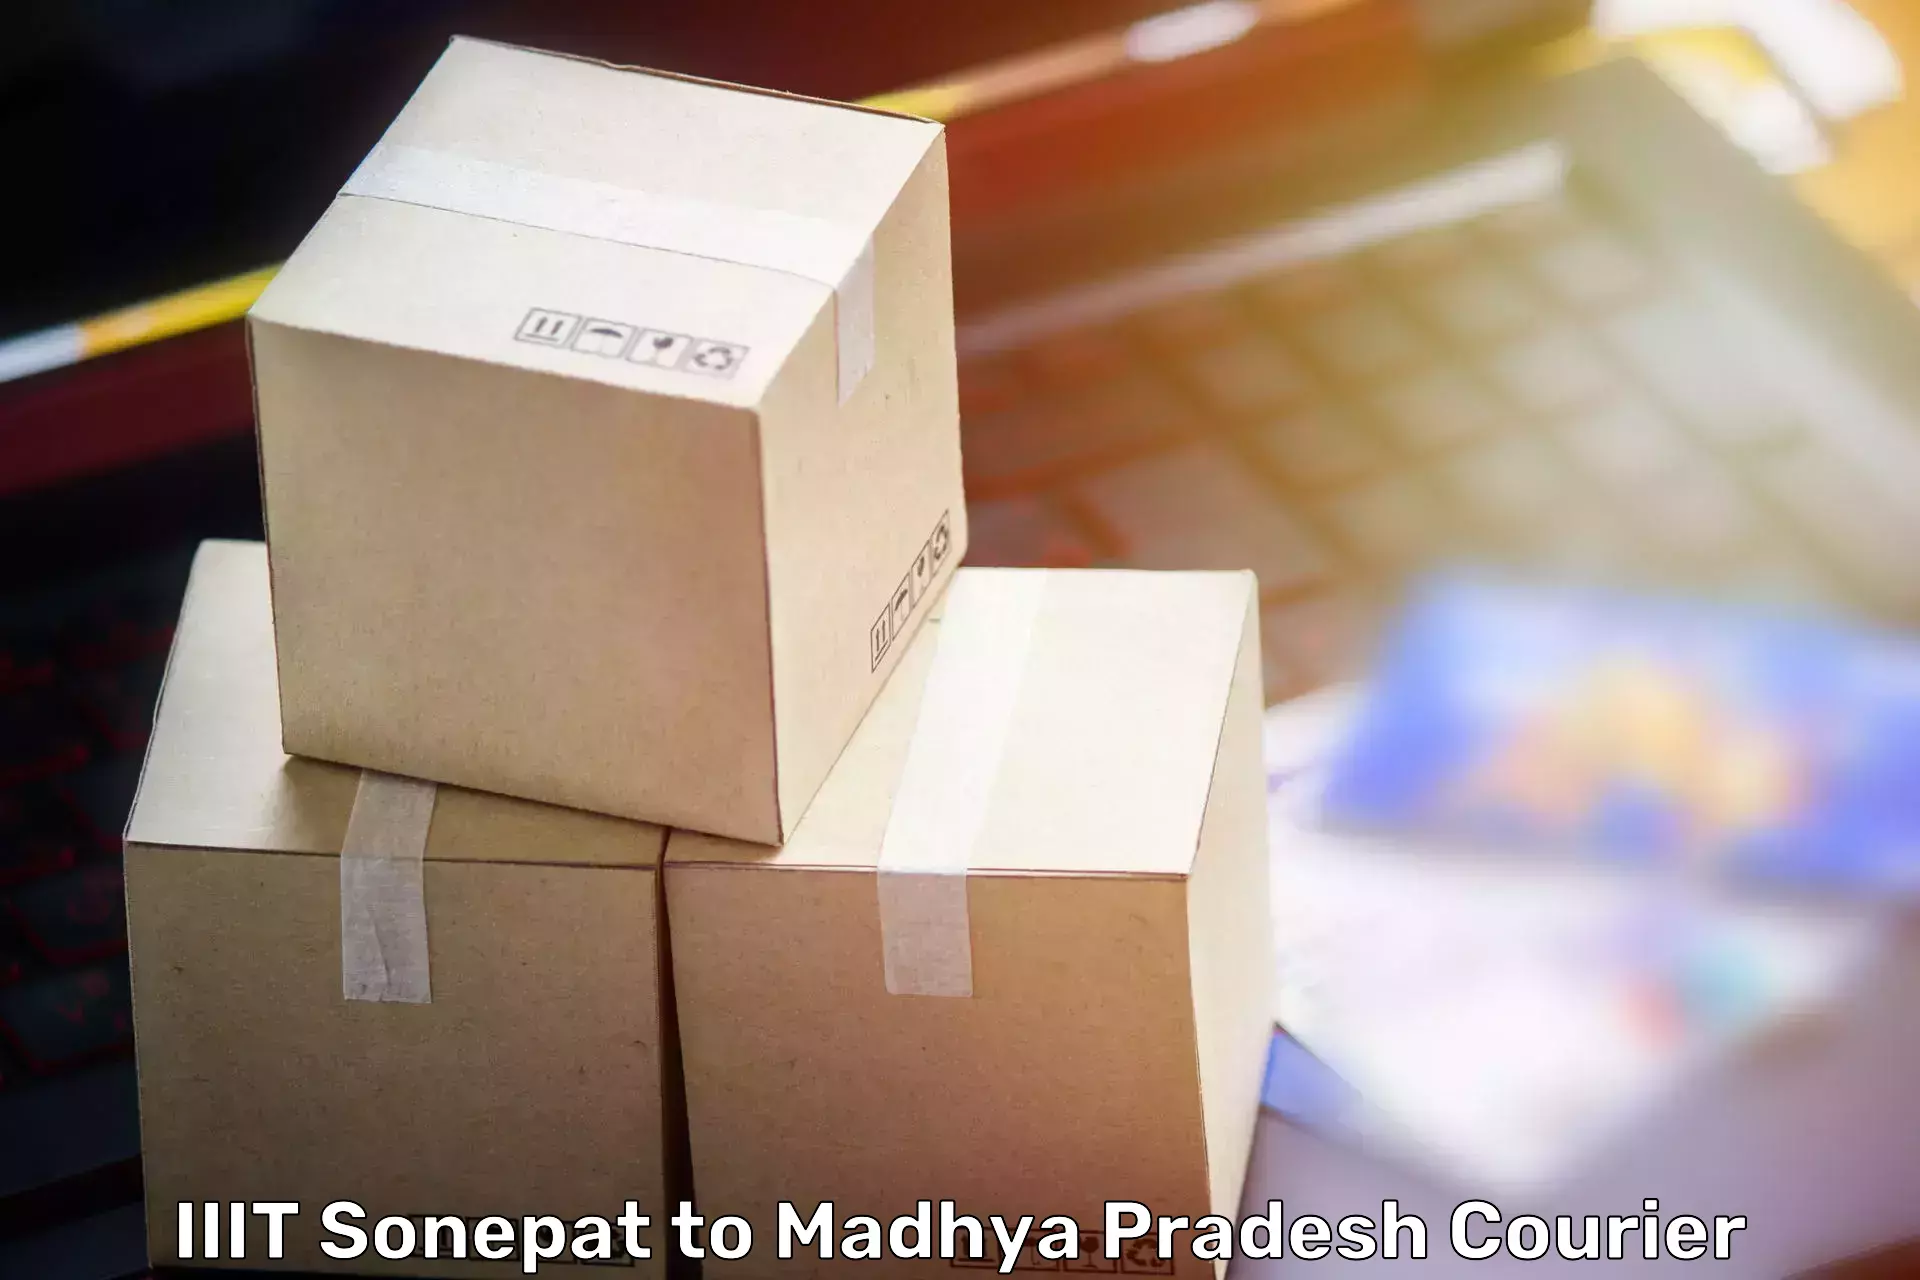 Furniture relocation experts IIIT Sonepat to Madhya Pradesh